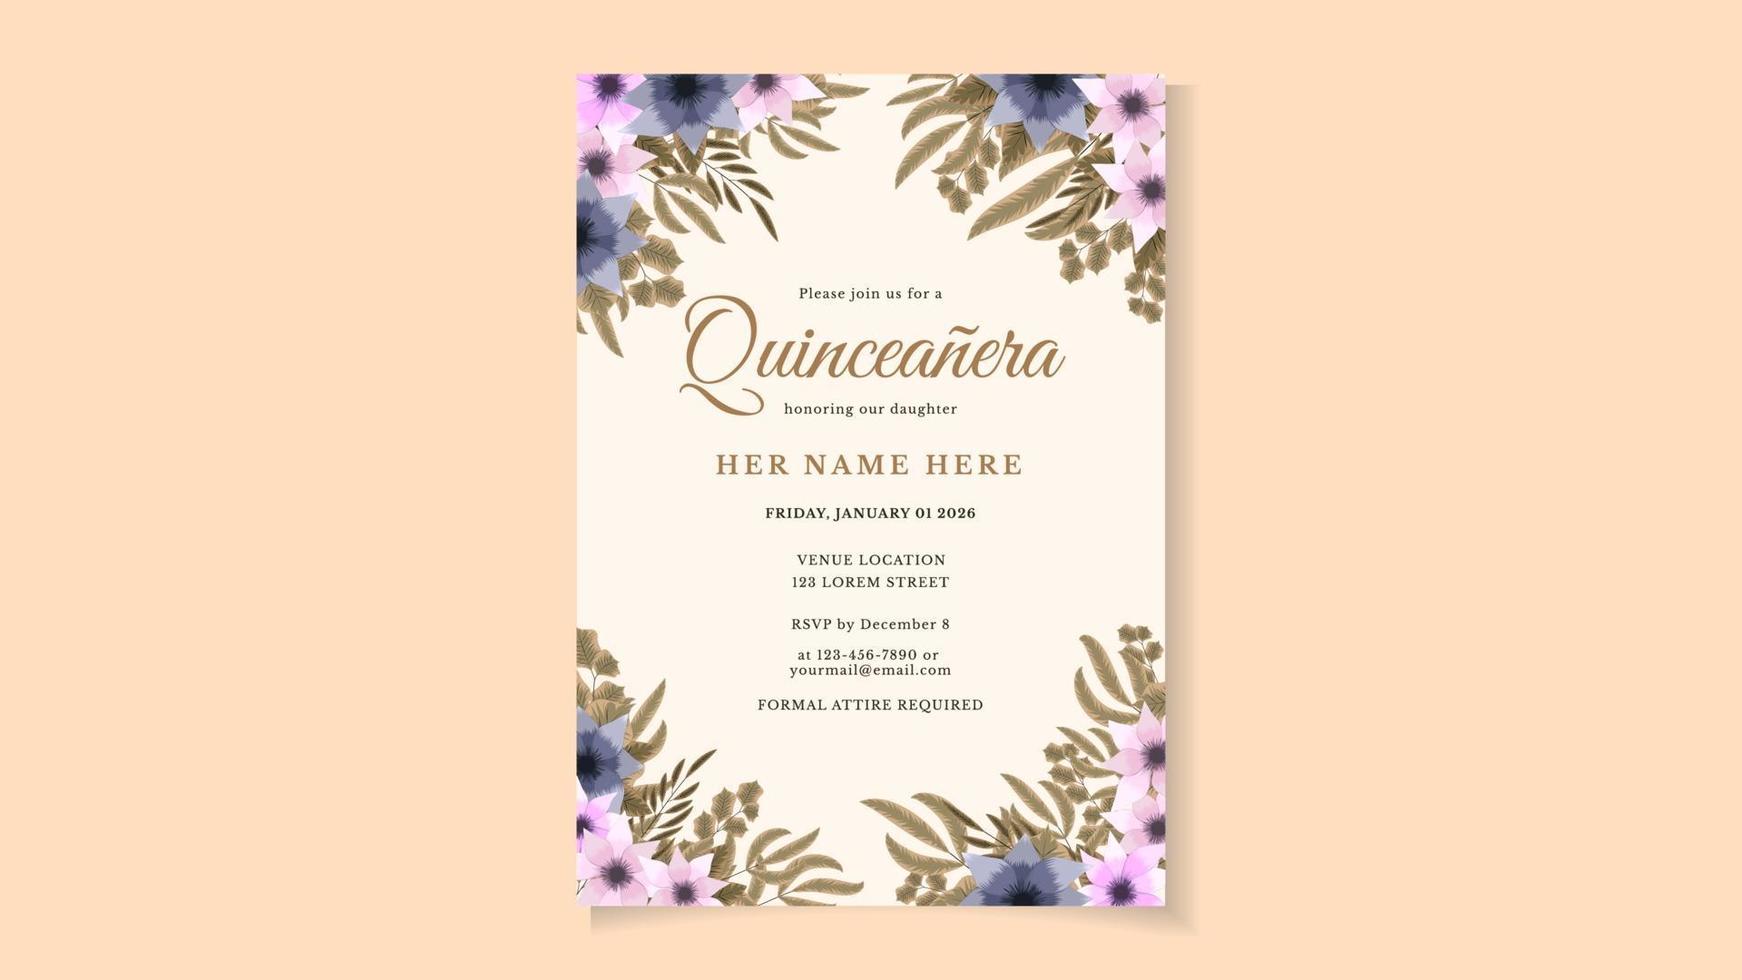 Quinceanera Geburtstagsfeier Blumen Flyer Einladungskartenvorlage vektor